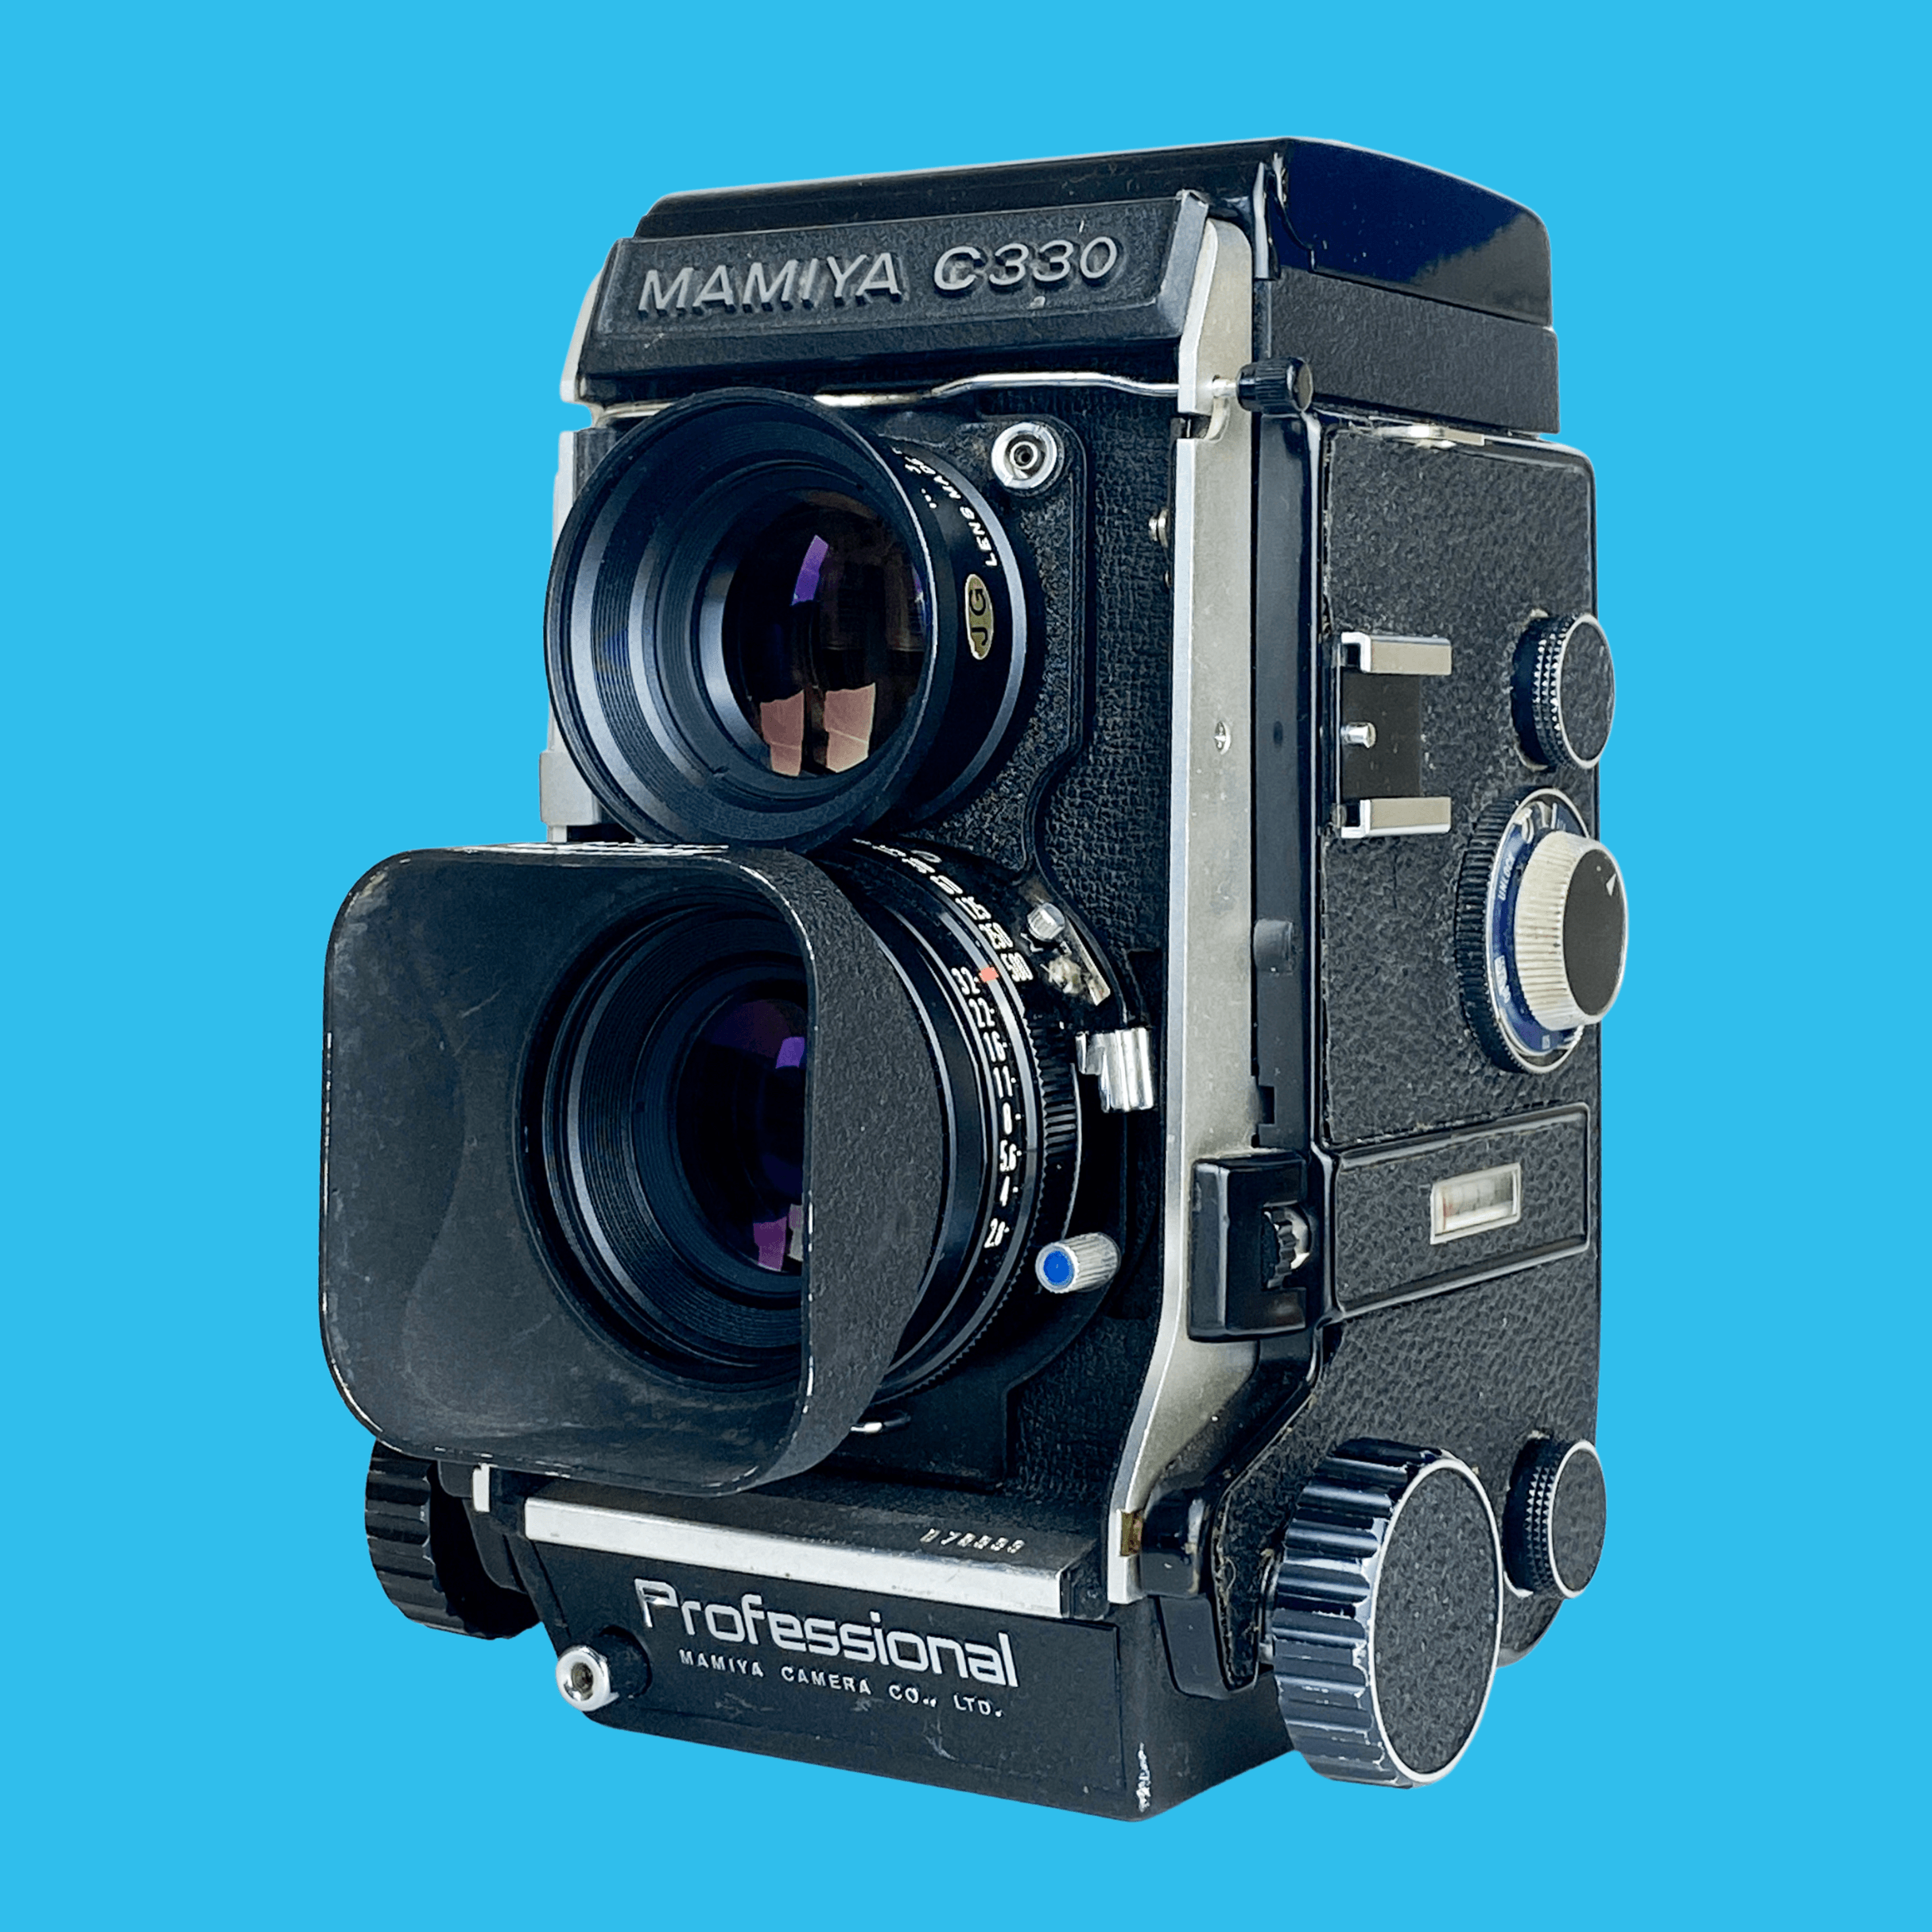 K05193☆マミヤ MAMIYA C330 PROFESSIONAL F 二眼レフカメラ - カメラ、光学機器